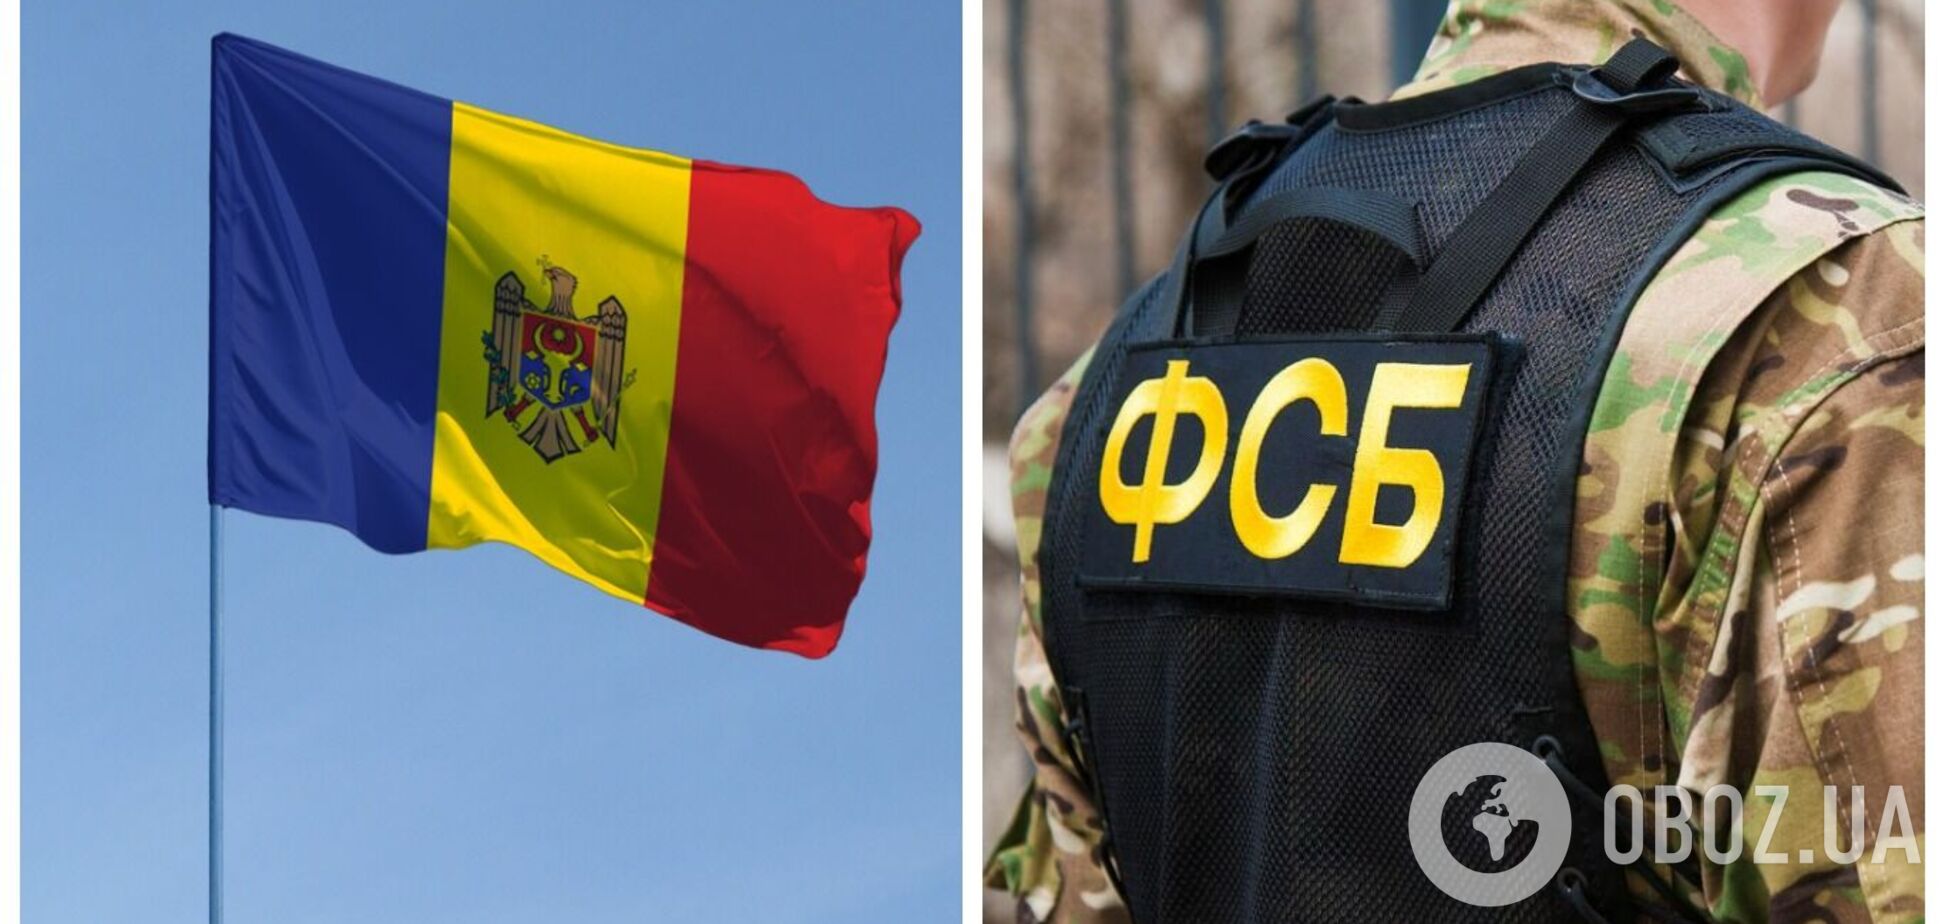 В Молдове после массовой высылки дипломатов РФ остаются сотрудники, имеющие связи с ФСБ – расследование